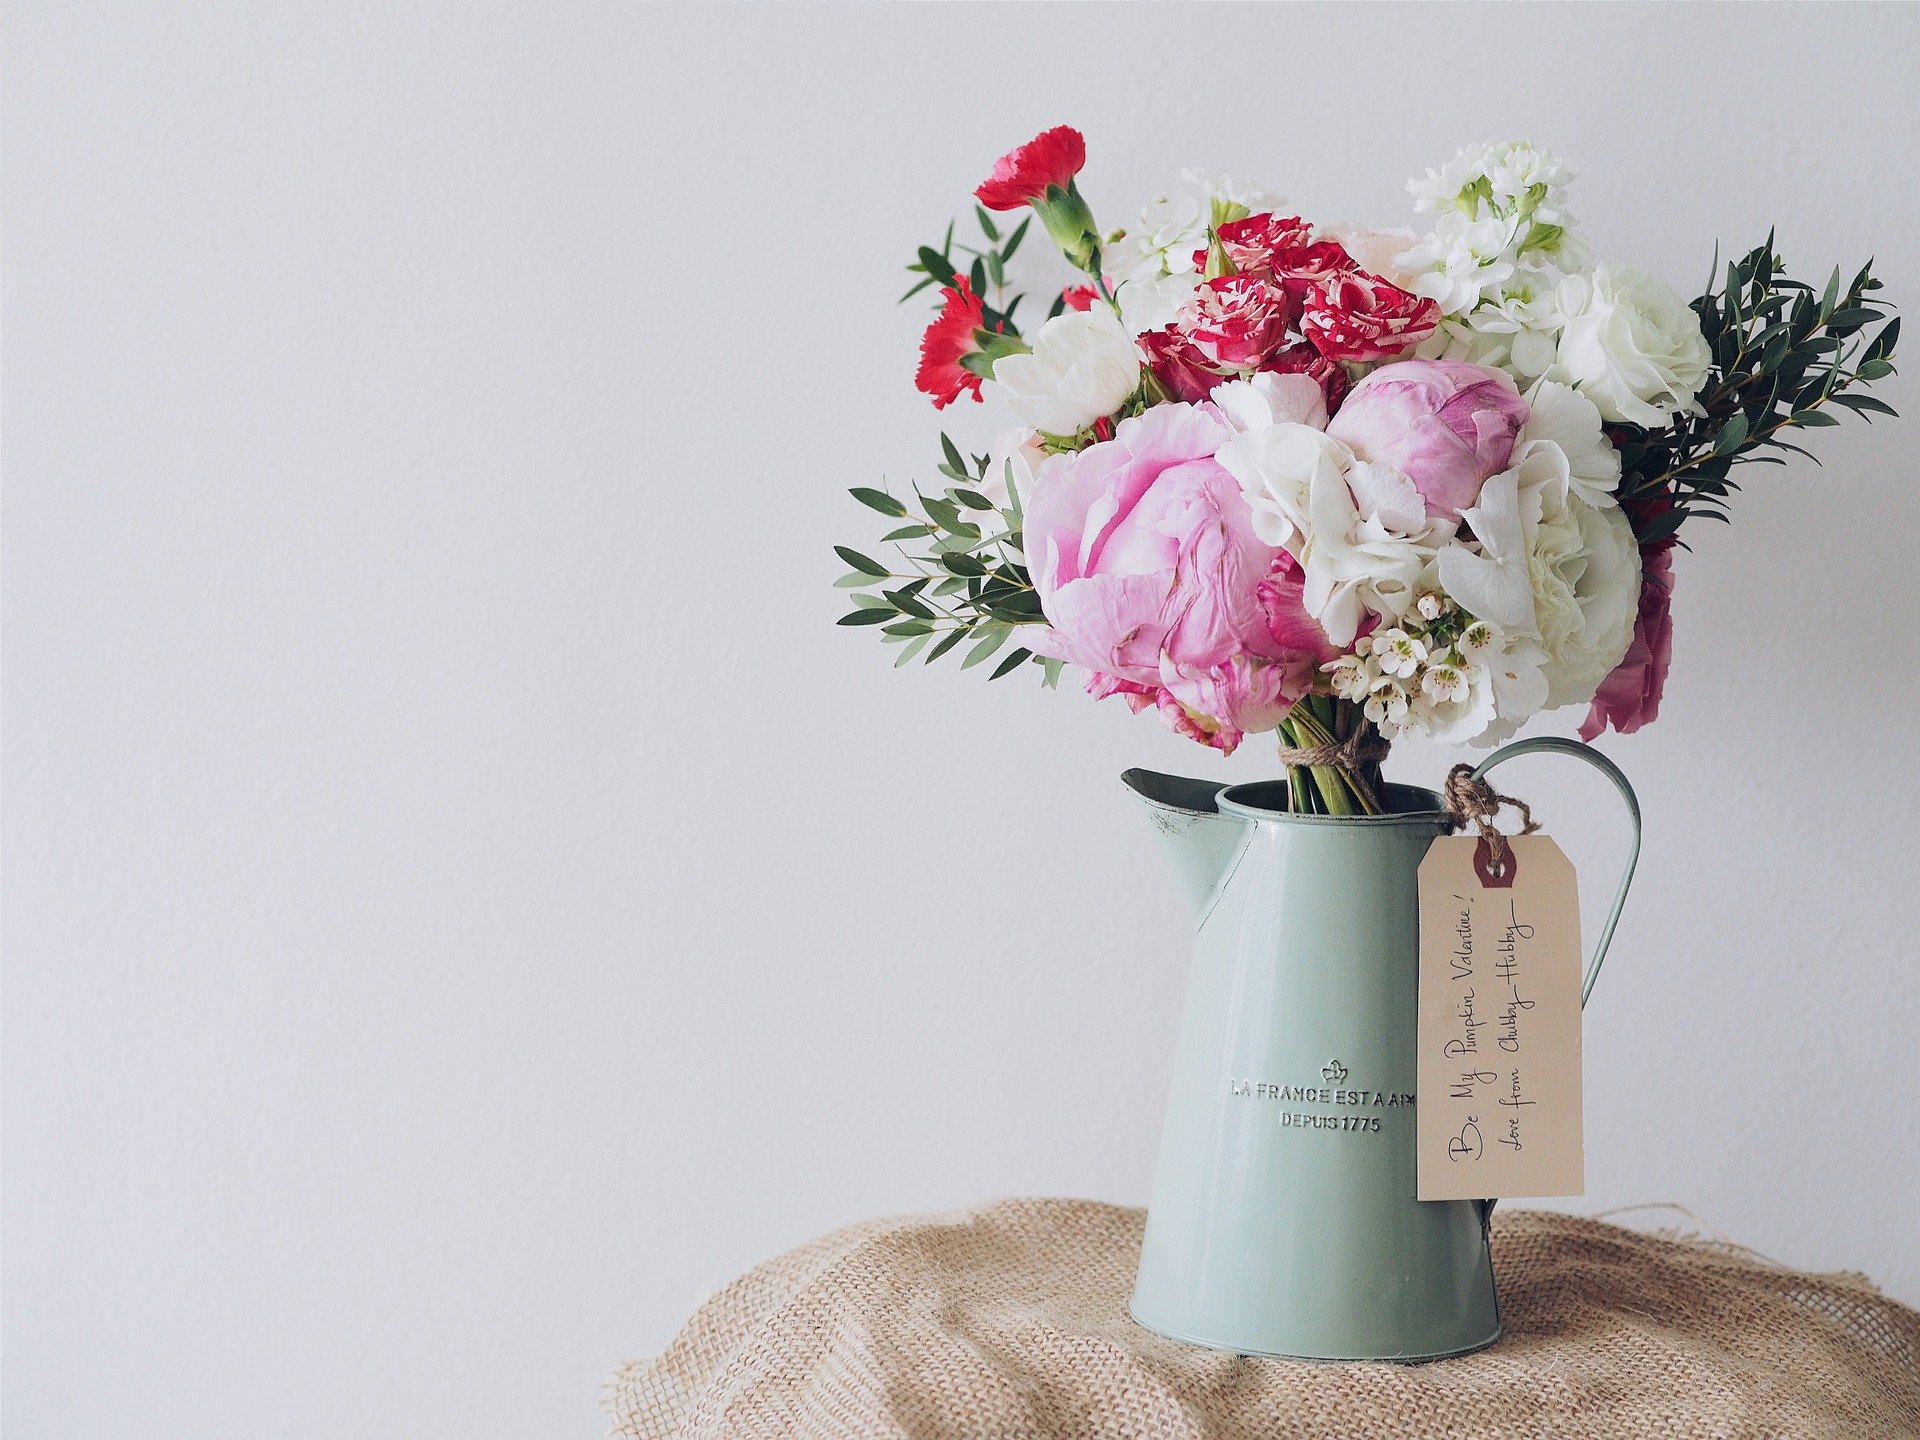 Violeta Corações: Aprenda a criar um lindo arranjo de flores